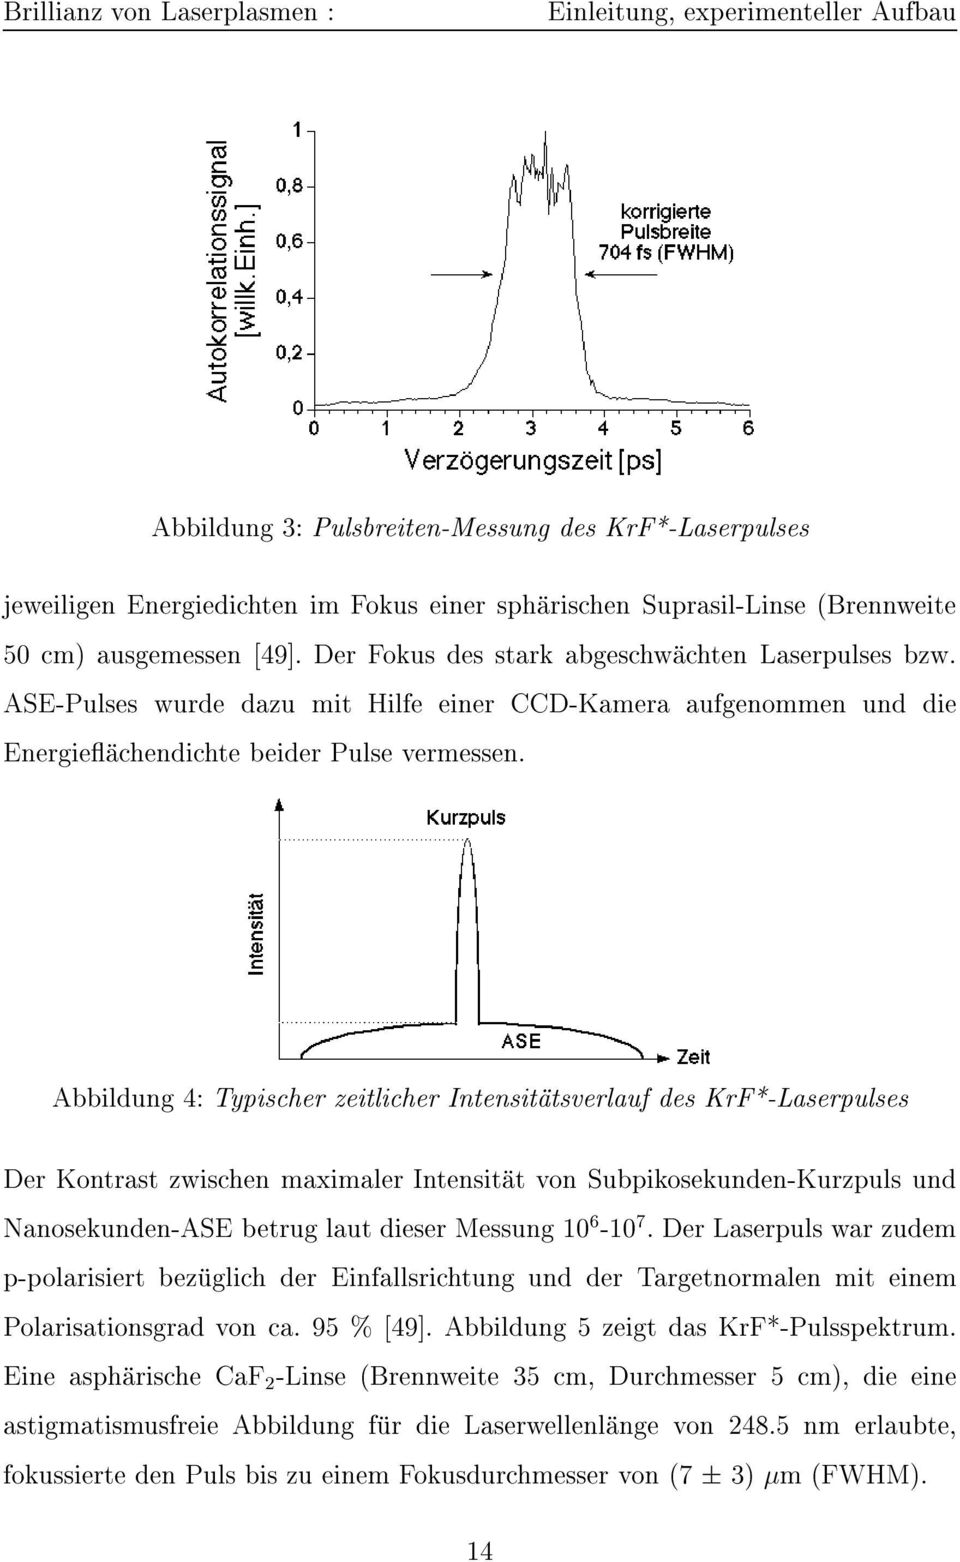 Abbildung 4: Typischer zeitlicher Intensitatsverlauf des KrF*-Laserpulses Der Kontrast zwischen maximaler Intensitat von Subpikosekunden-Kurzpuls und Nanosekunden-ASE betrug laut dieser Messung 10